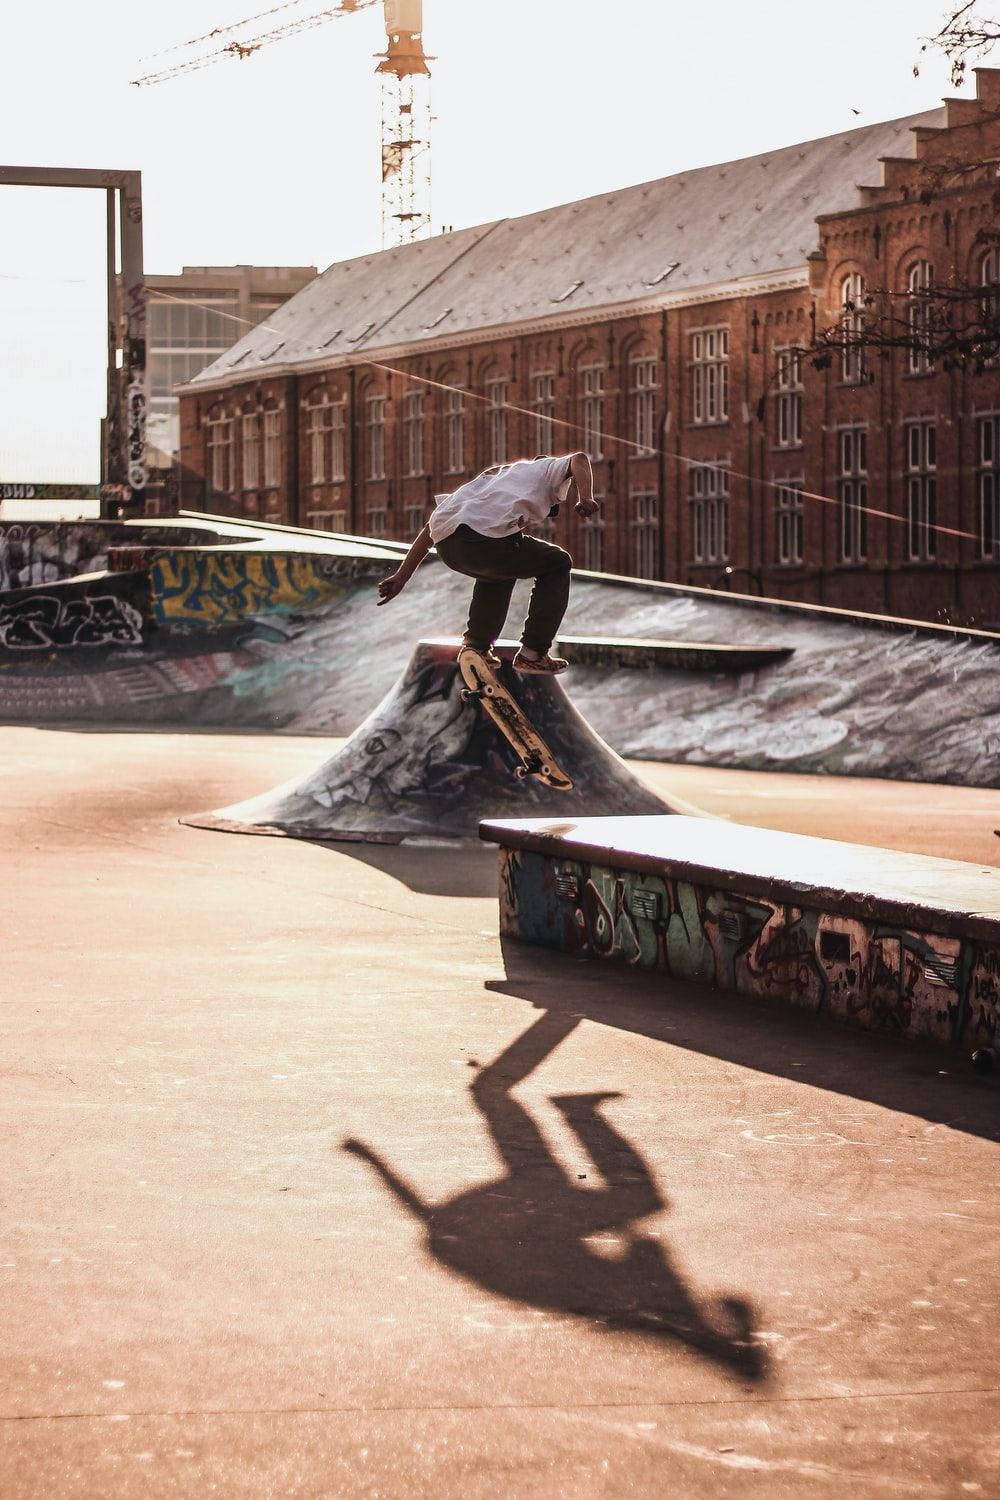 Aesthetic Skateboard Park Wallpaper